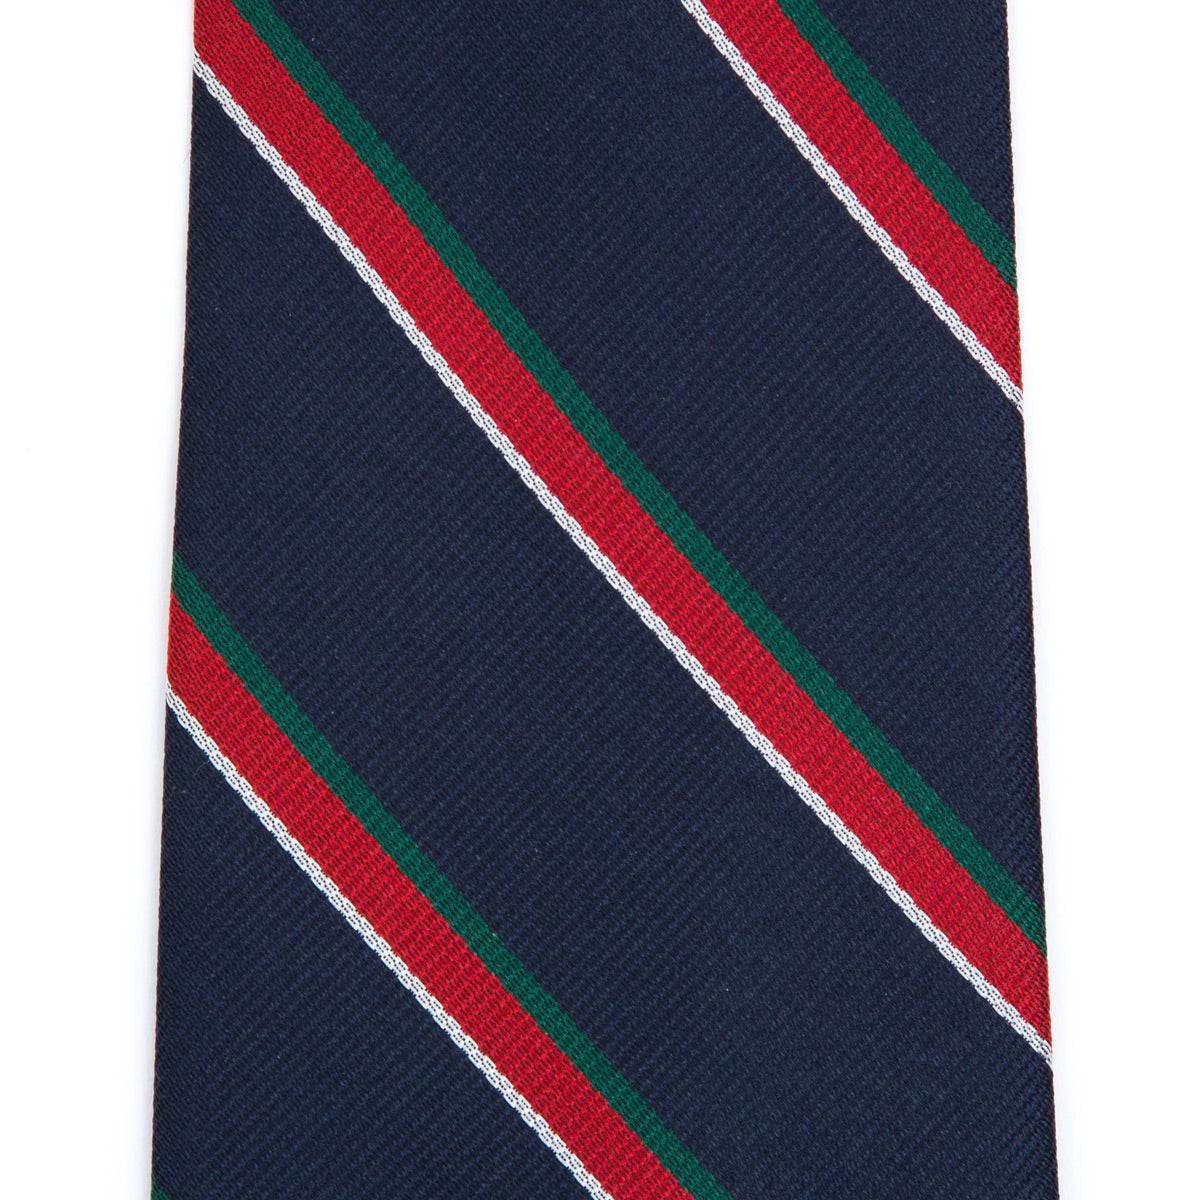 Club striped tie